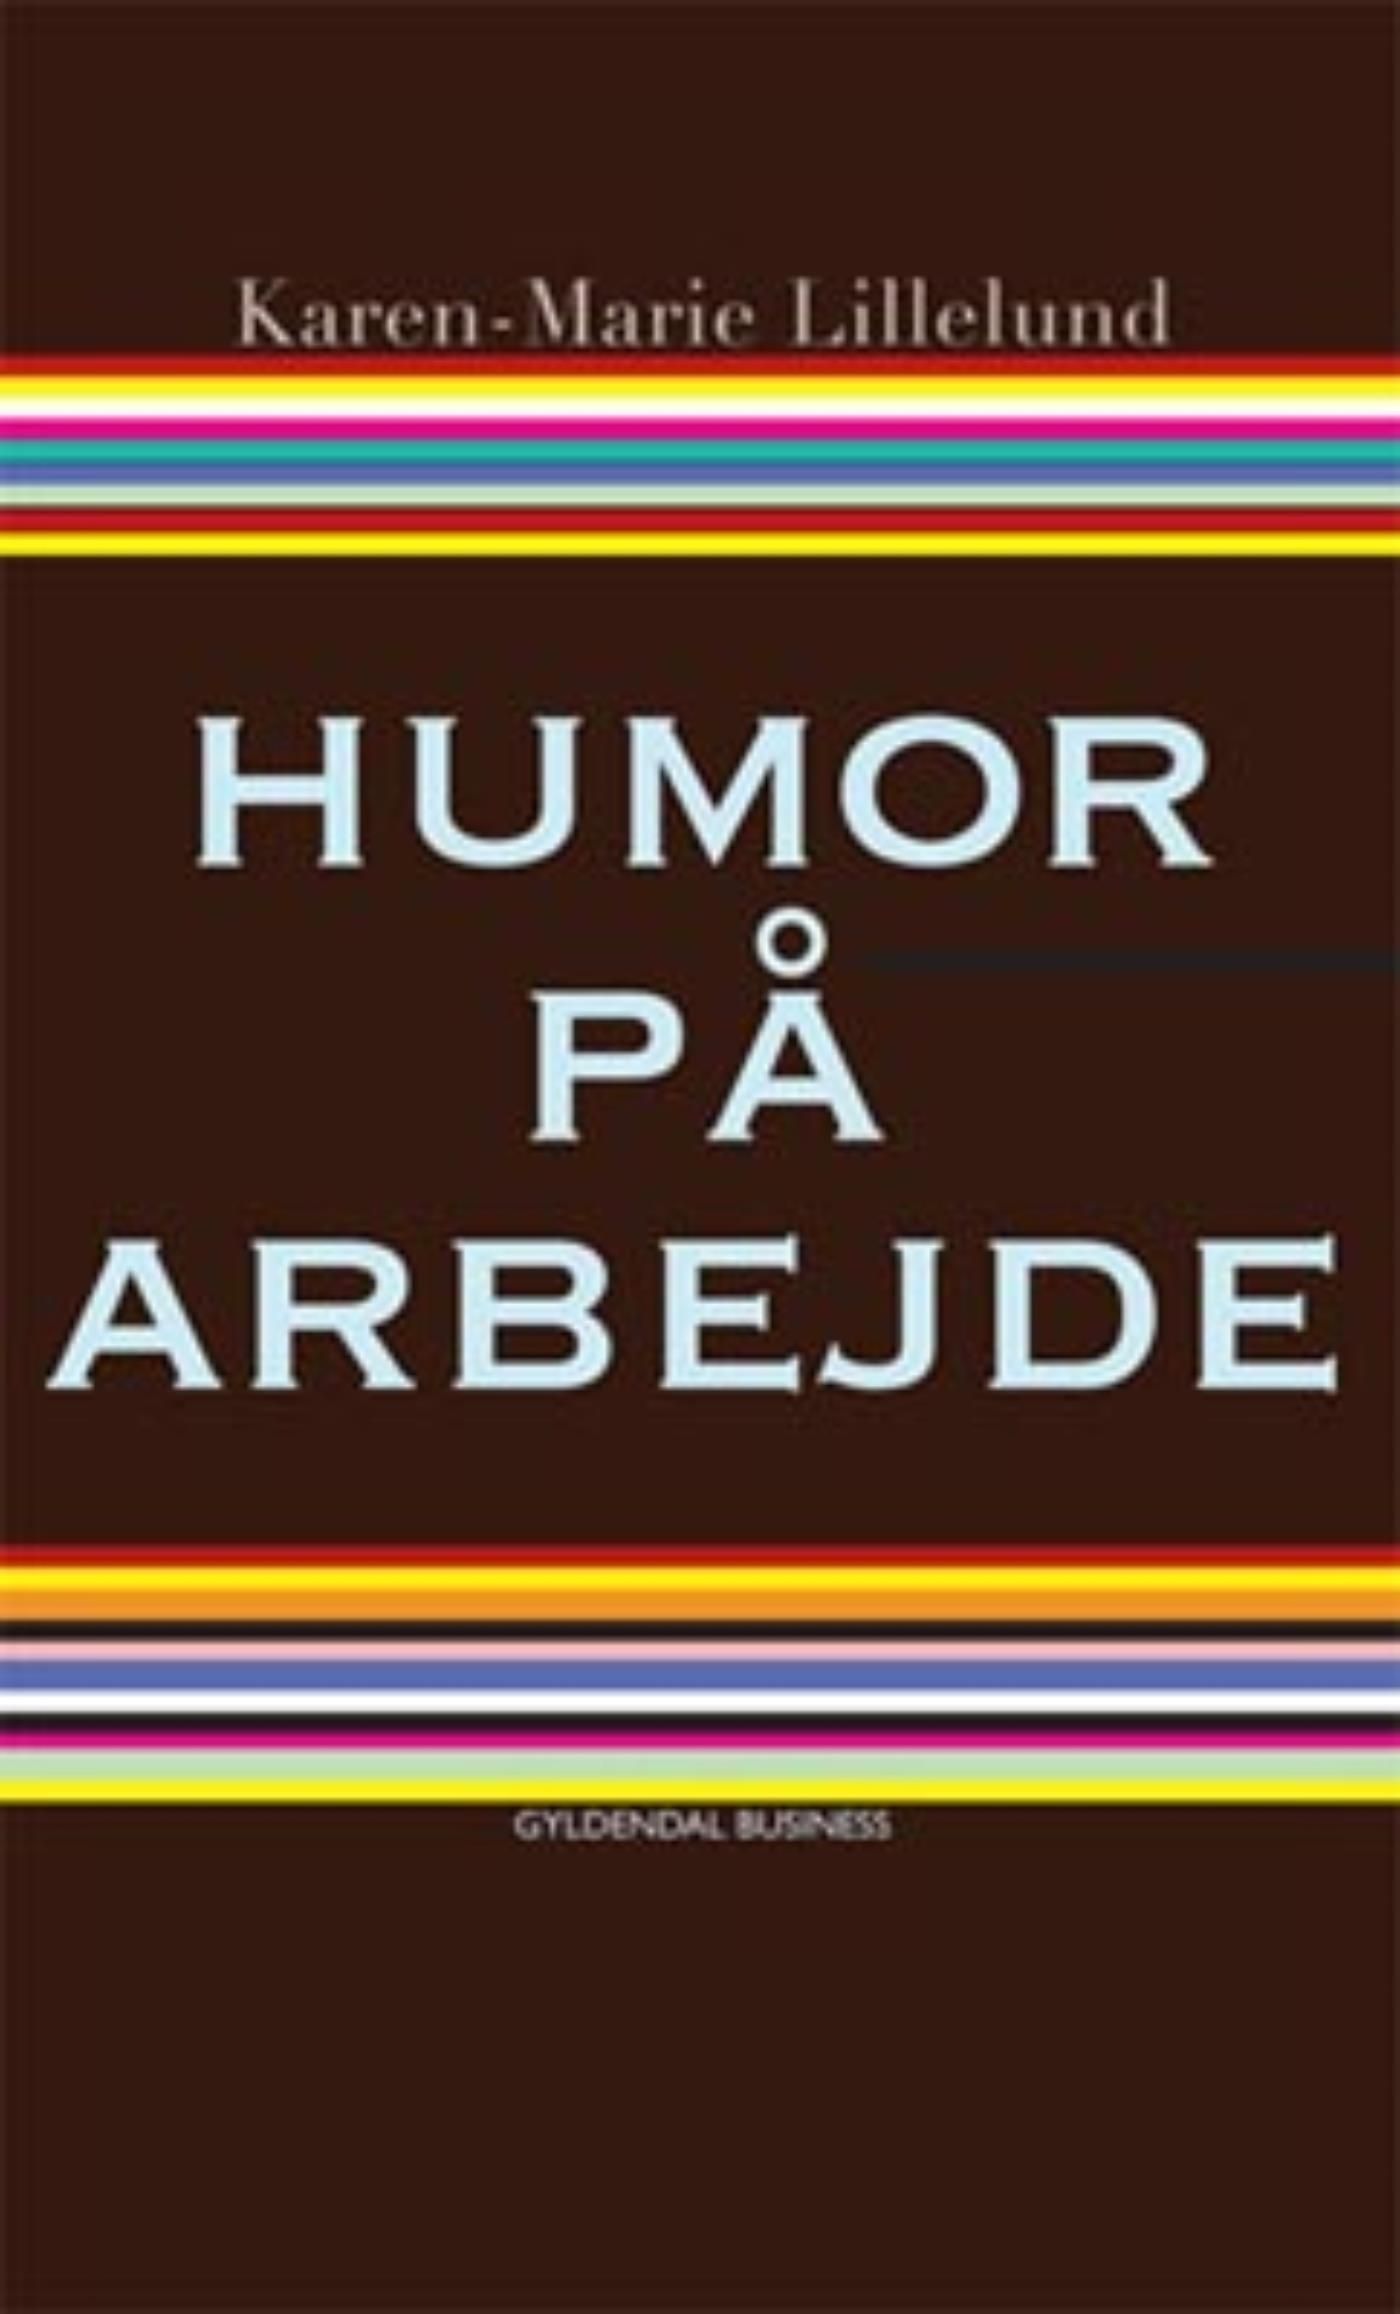 Humor på arbejde, e-bog af Karen-Marie Lillelund